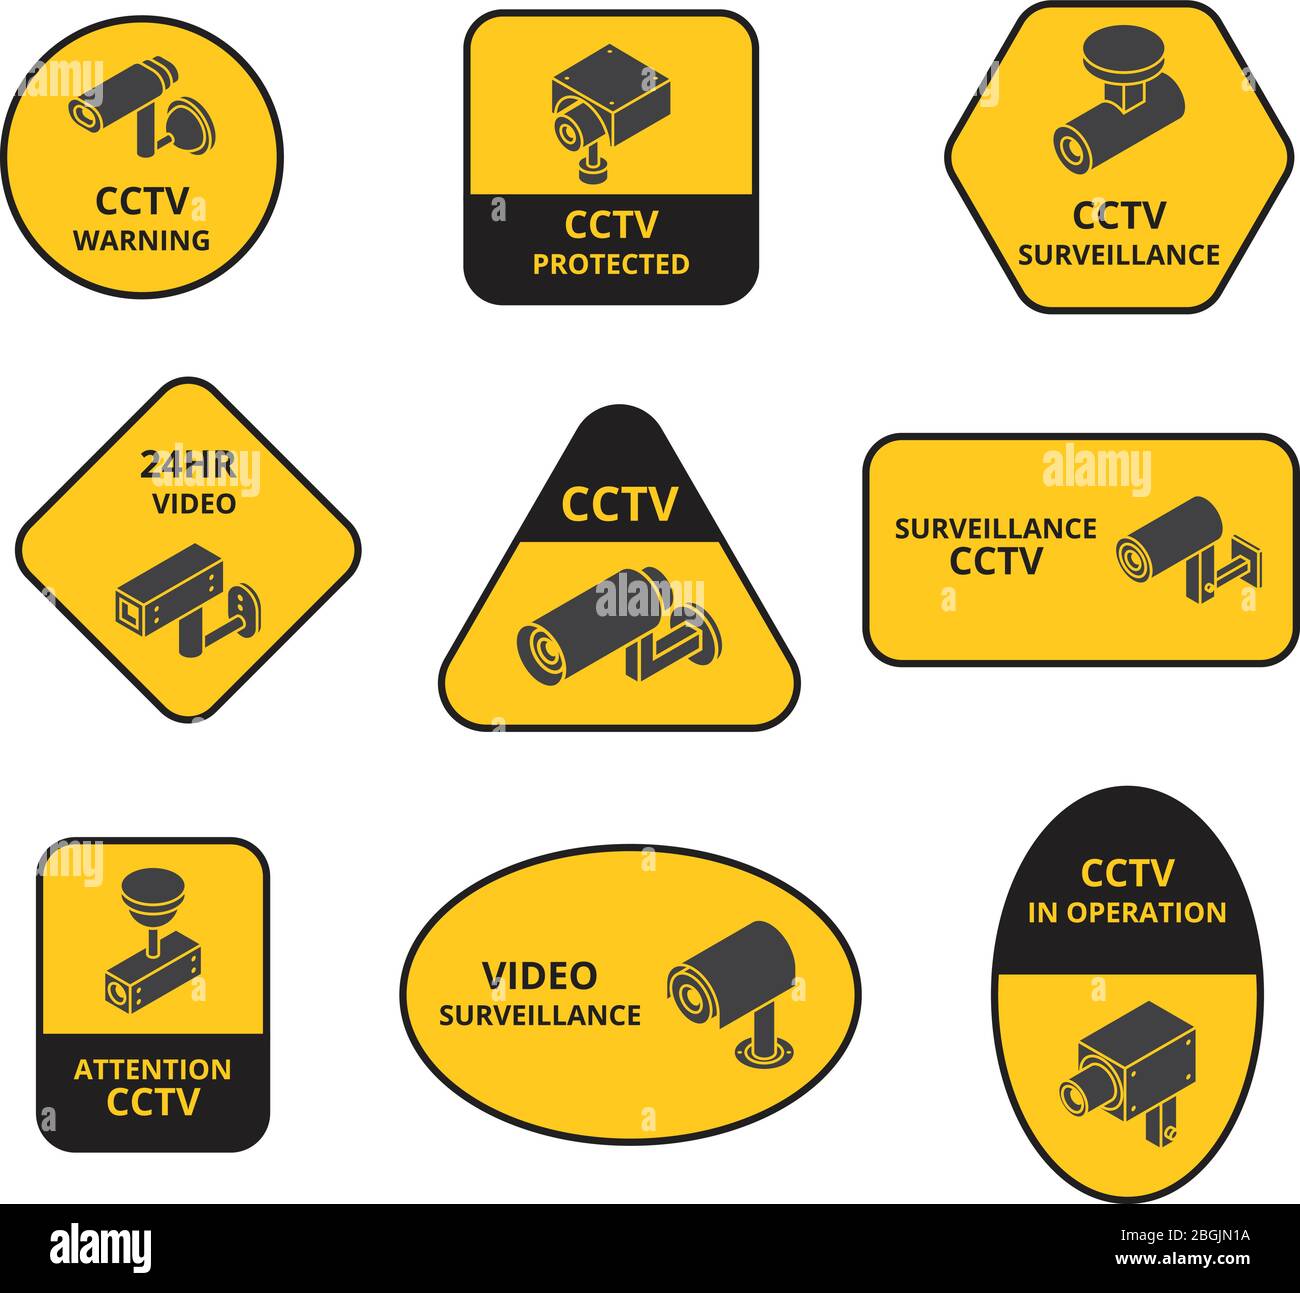 Caméra de sécurité cctv, surveillance caméras de télévision d'extérieur autocollants d'avertissement vectoriels. Sécurité vidéo, contrôle de la vidéosurveillance, surveillance et sécurité Illustration de Vecteur